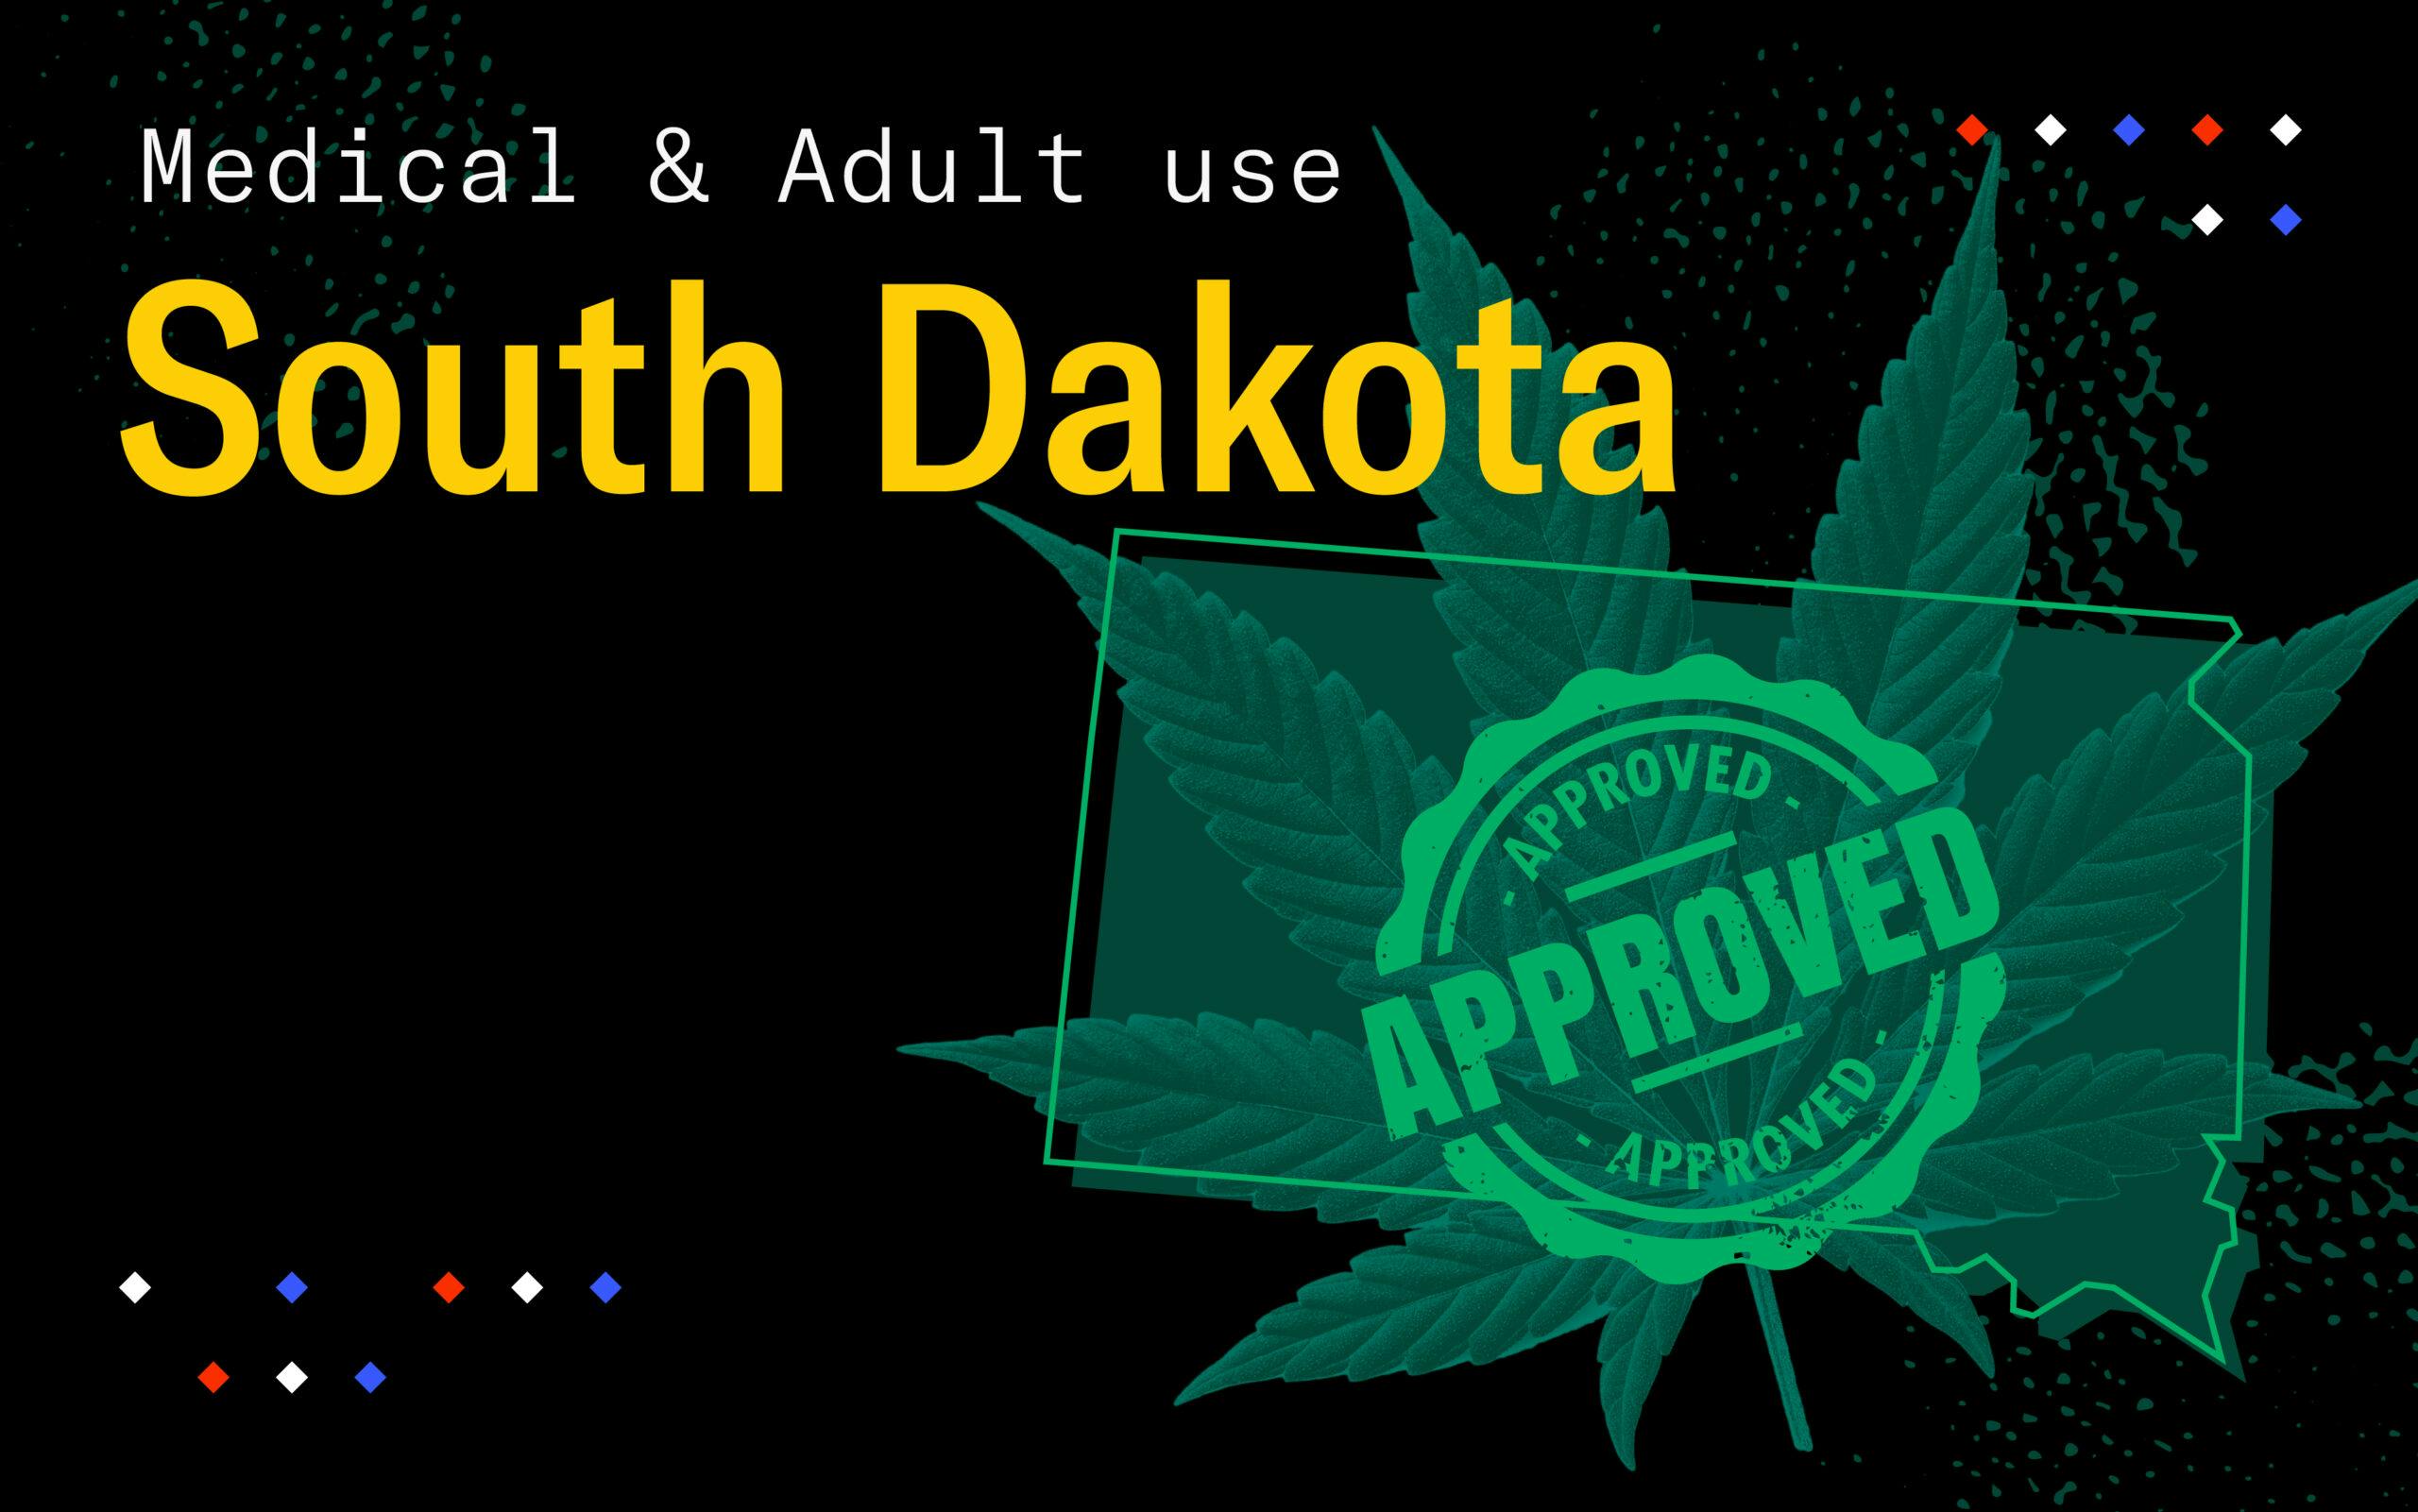 South Dakota just voted to legalize medical and adultuse marijuana